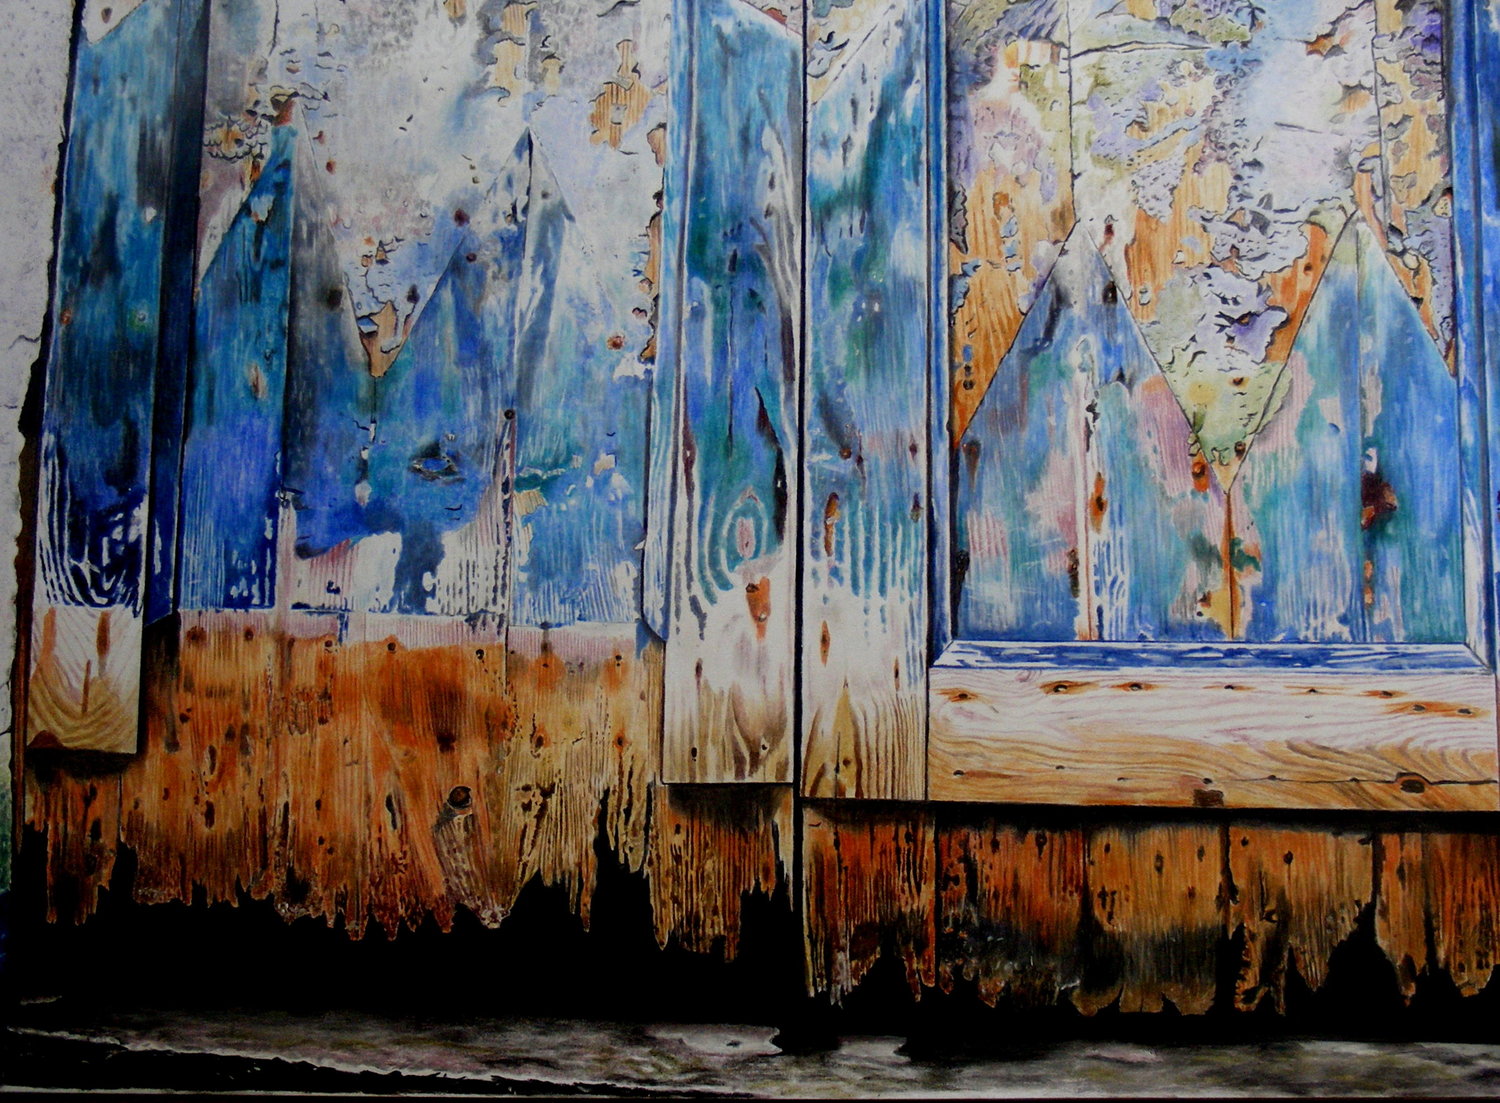 'Venetian door by canal's edge', Jayne Morgan, Pastel pencils on paper, 49 x 55 x 1 cm